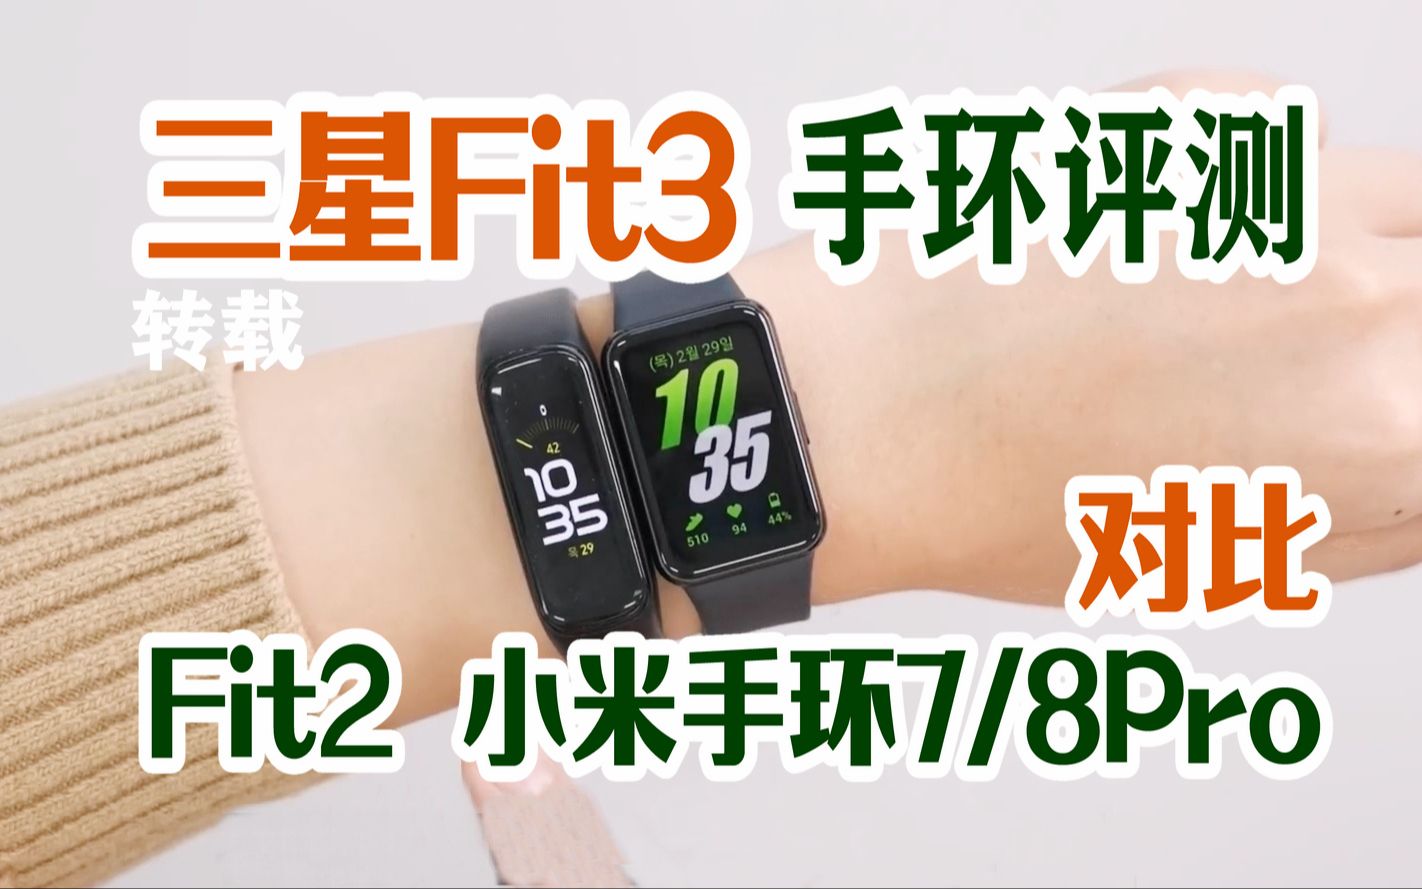 【三星Fit3 评测】对比Fit2和三星苹果Watch 及小米手环8Pro 韩语中字 #转载#数码